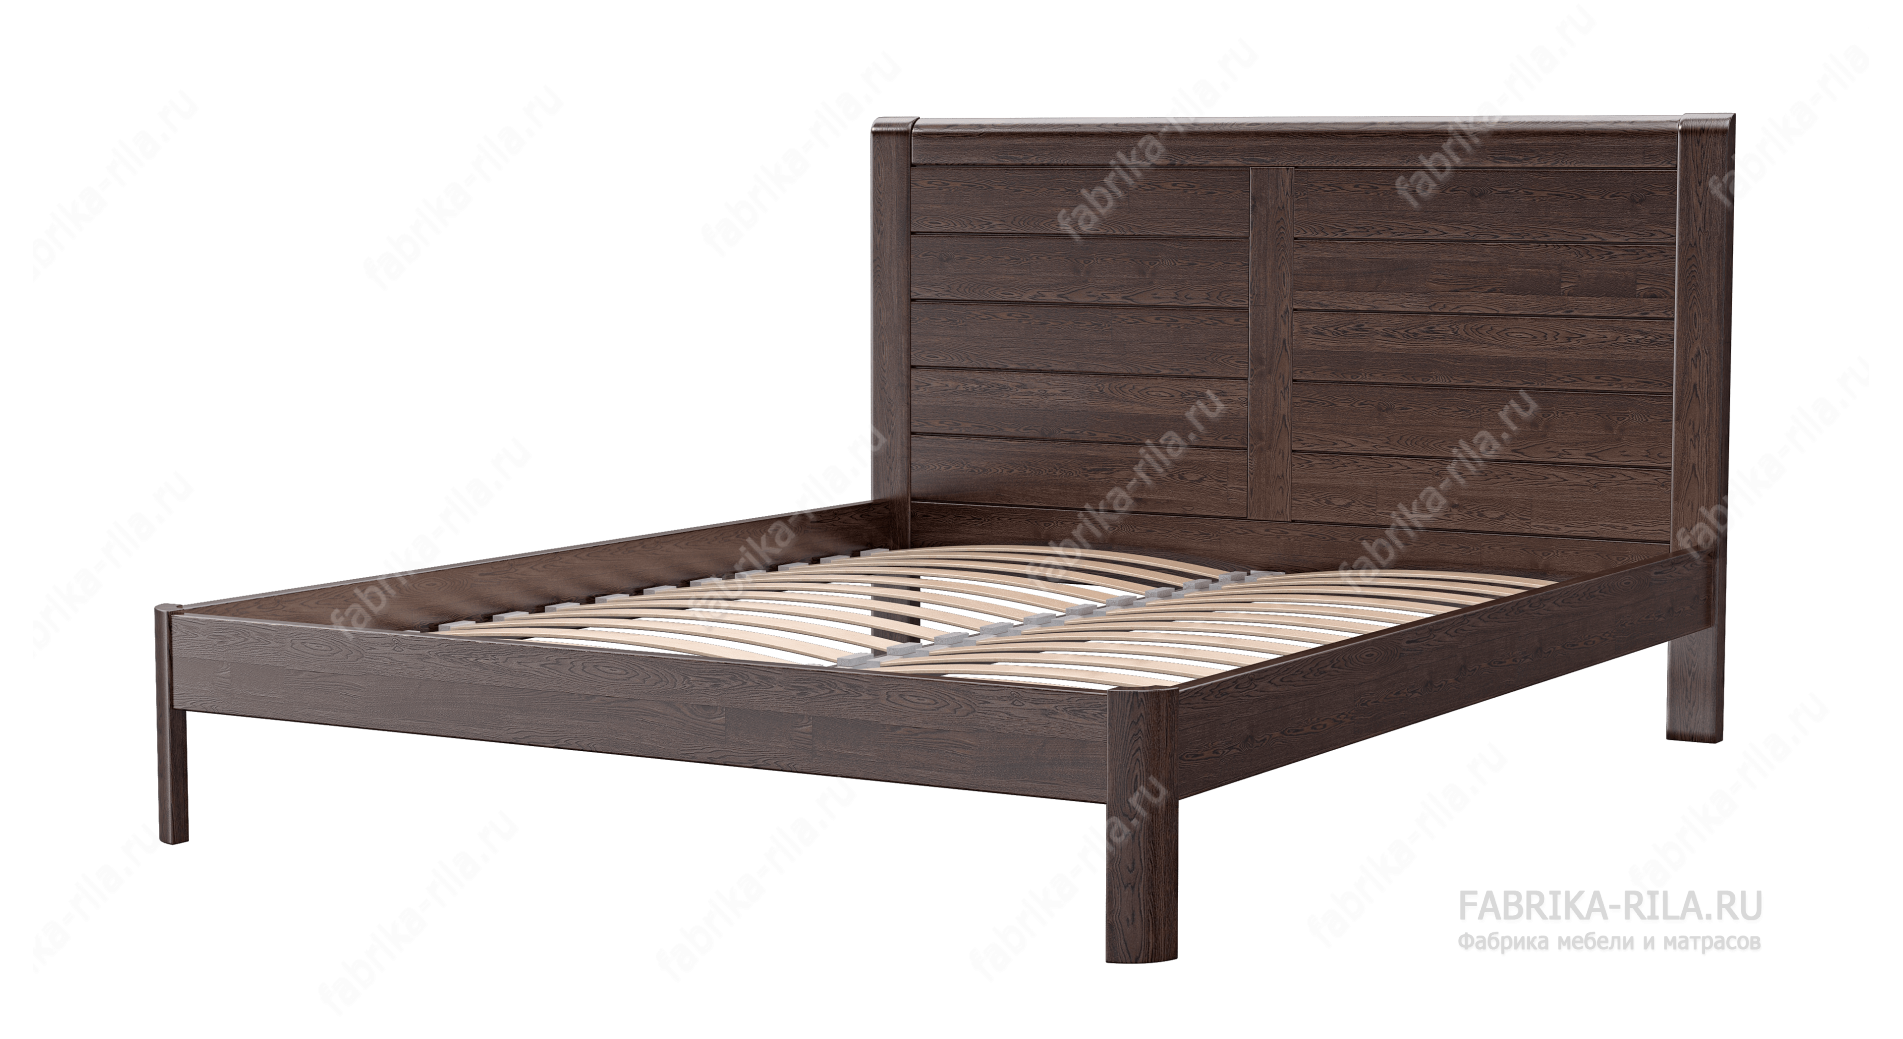 Кровать Riviera — 200x190 см. из сосны